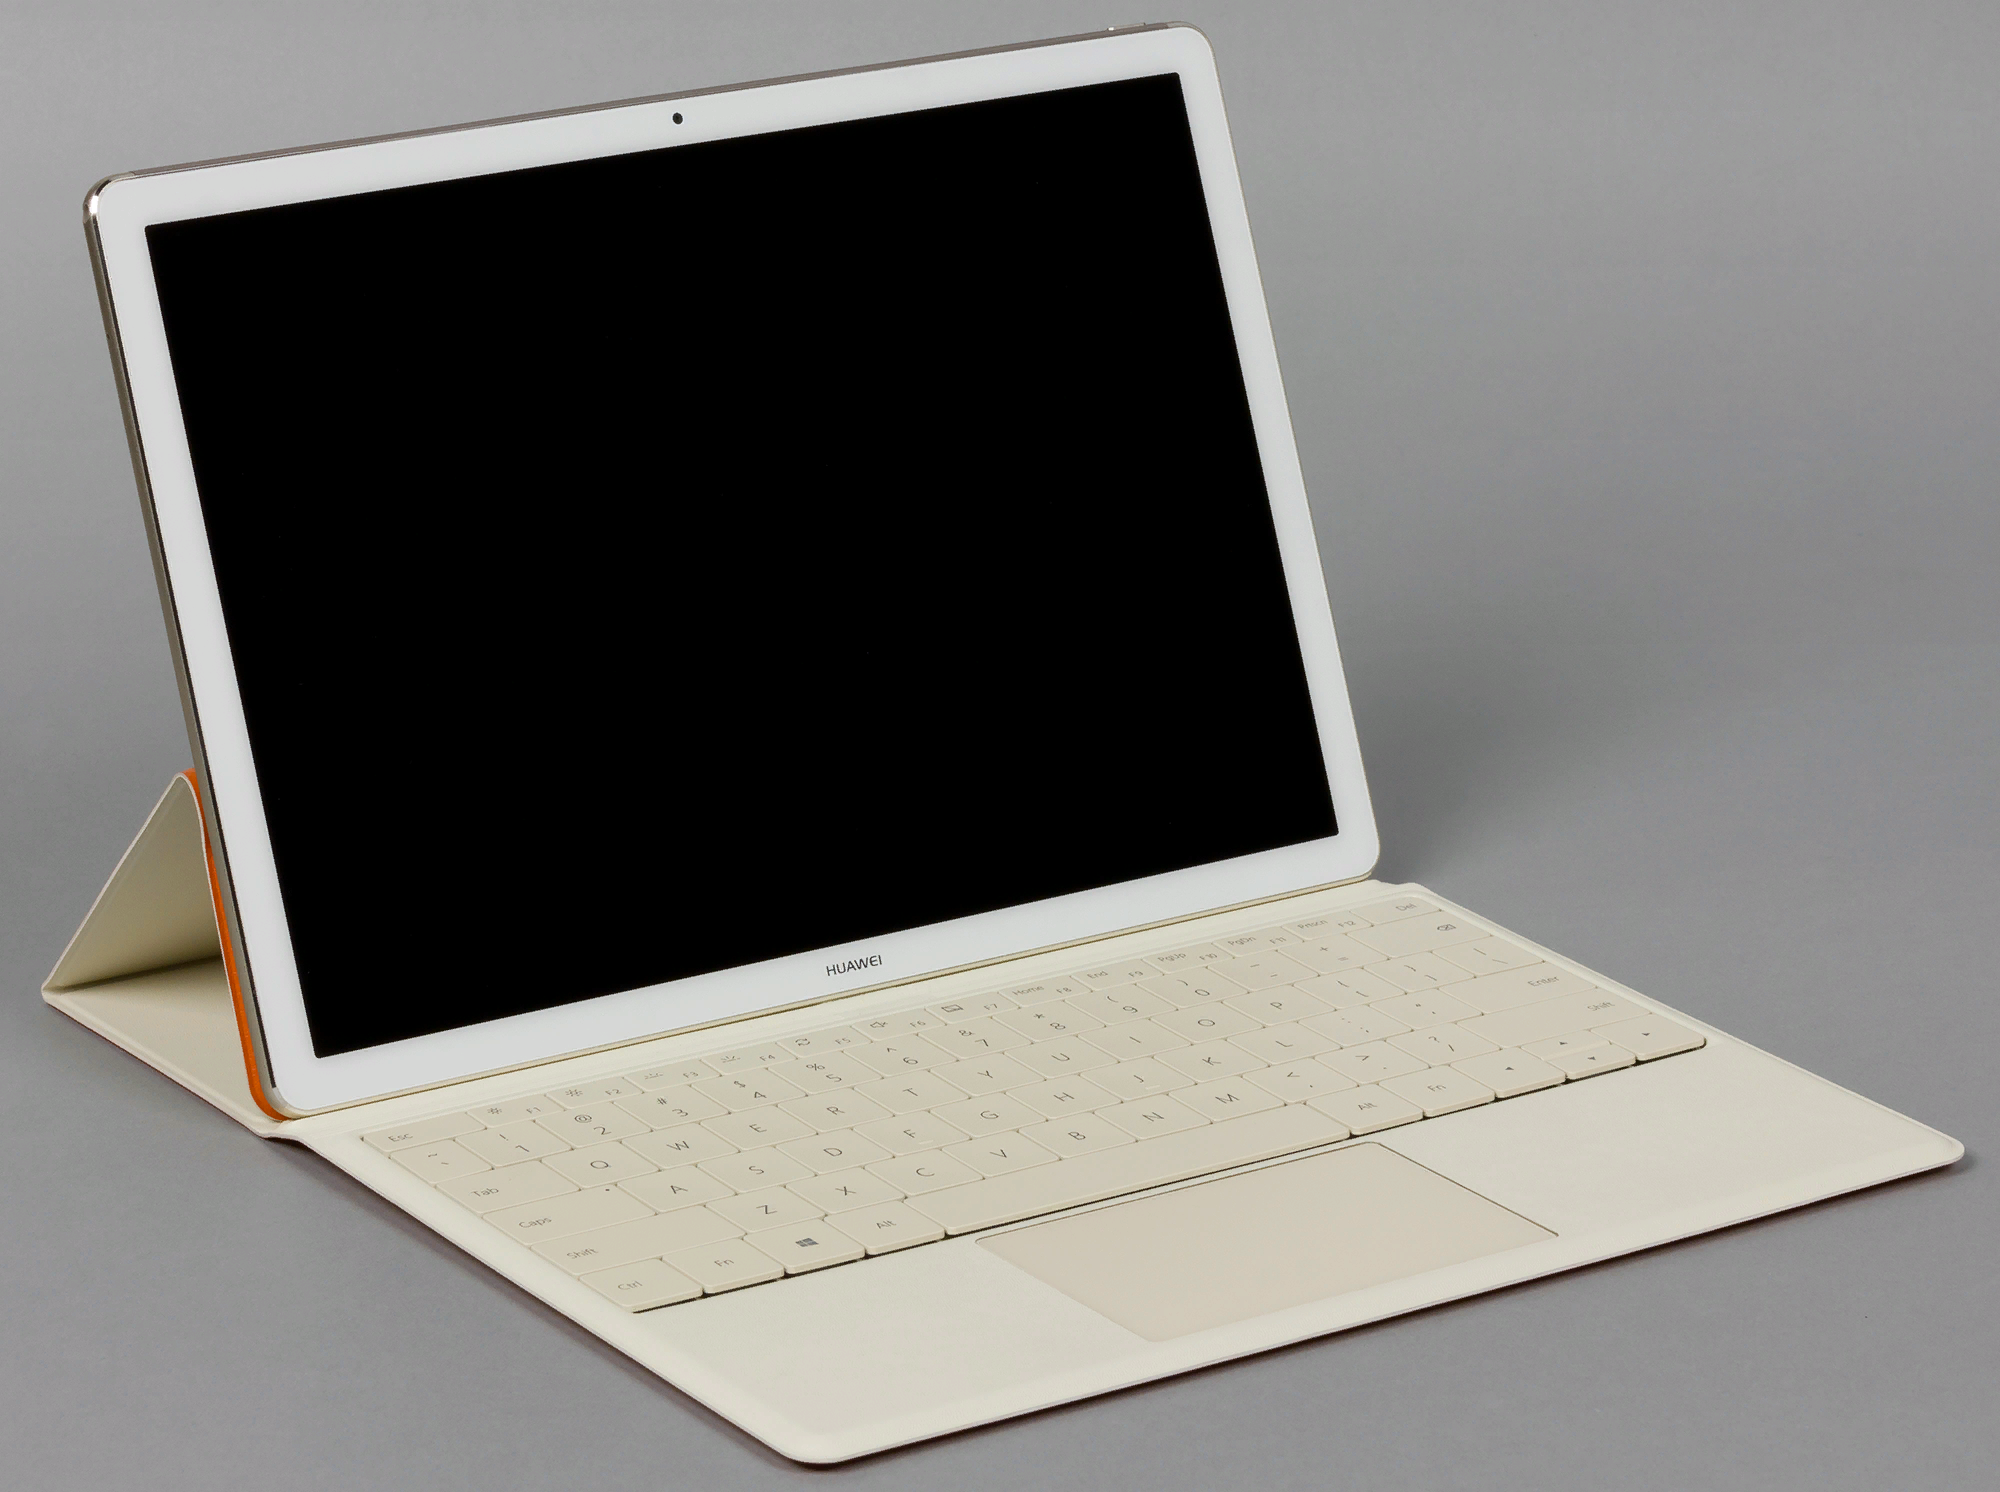 Рис. 1. Matebook 128Gb – планшетный ПК с комплектной клавиатурой и мощным ЦПУ.